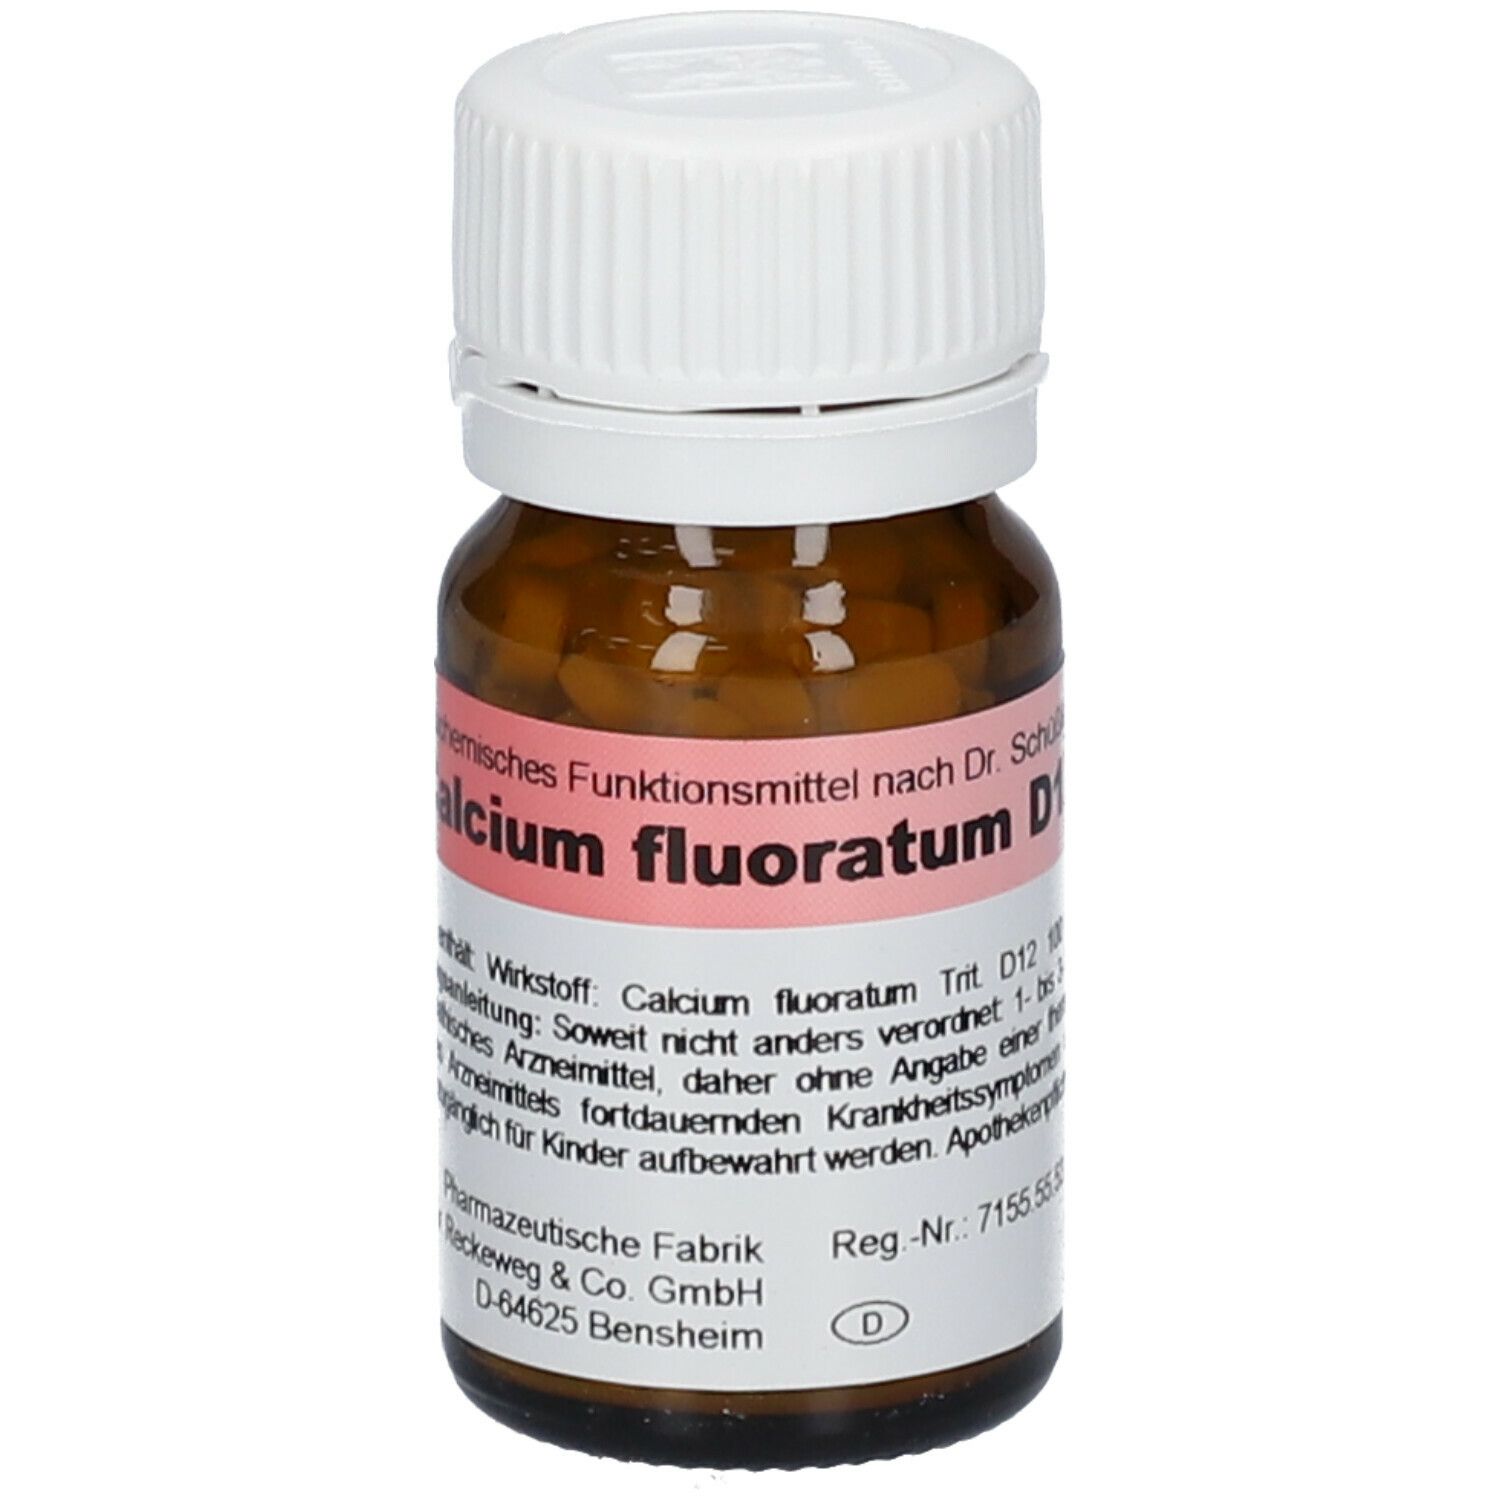 Biochemie 1 Calcium fluoratum D 12 Tabletten